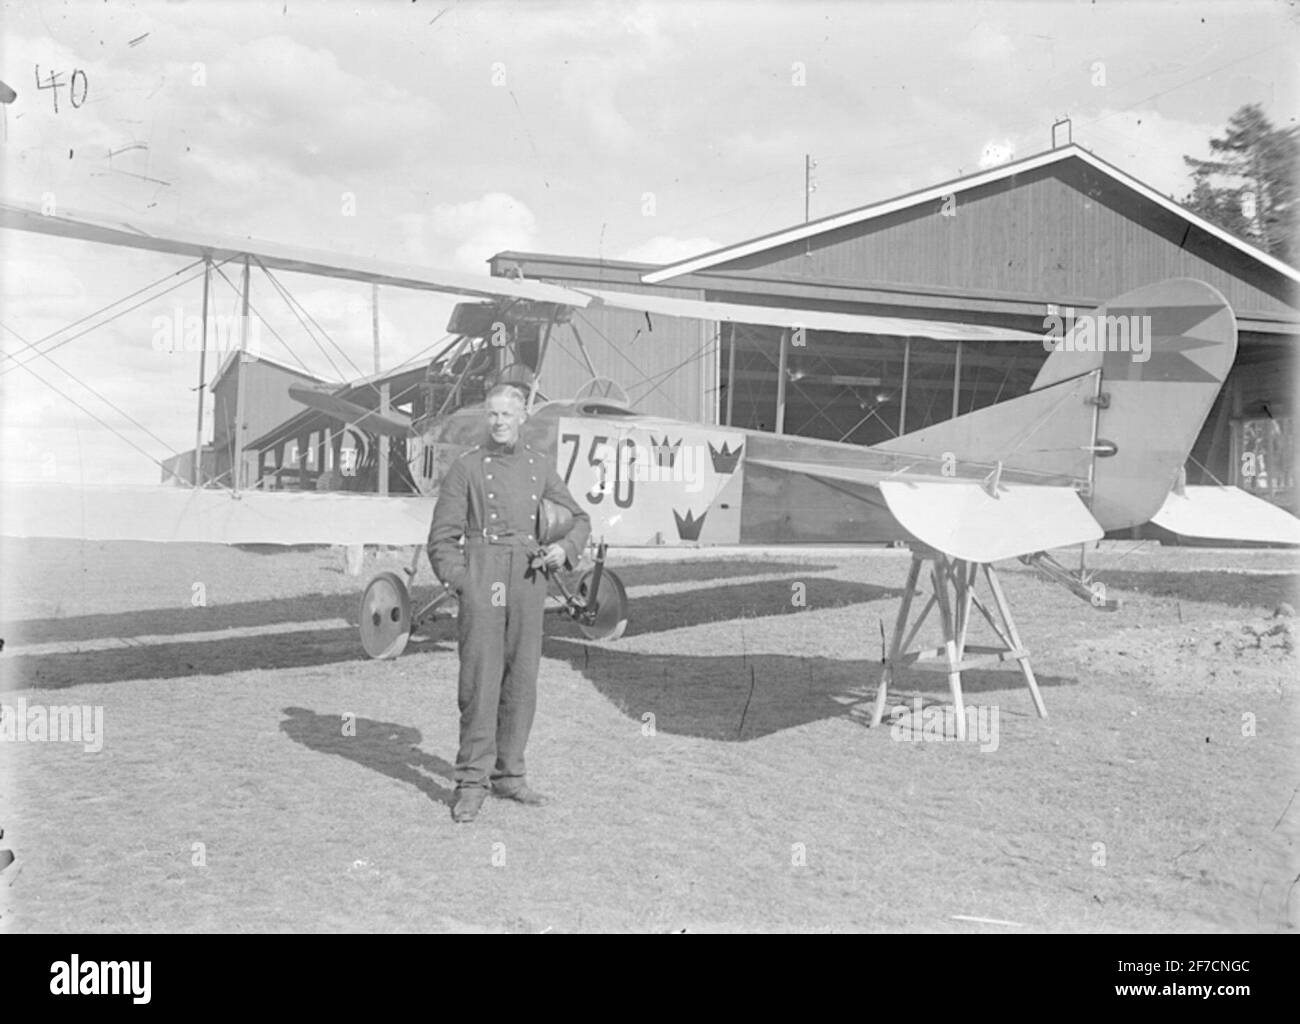 Porträt und Flugzeug Porträt des Leutnants vor dem Flugzeug Albatros SW 20 No. 750. Das Flugzeugheck ist auf Zecke vor dem Hangar auf dem Erz aufgestellt. Stockfoto